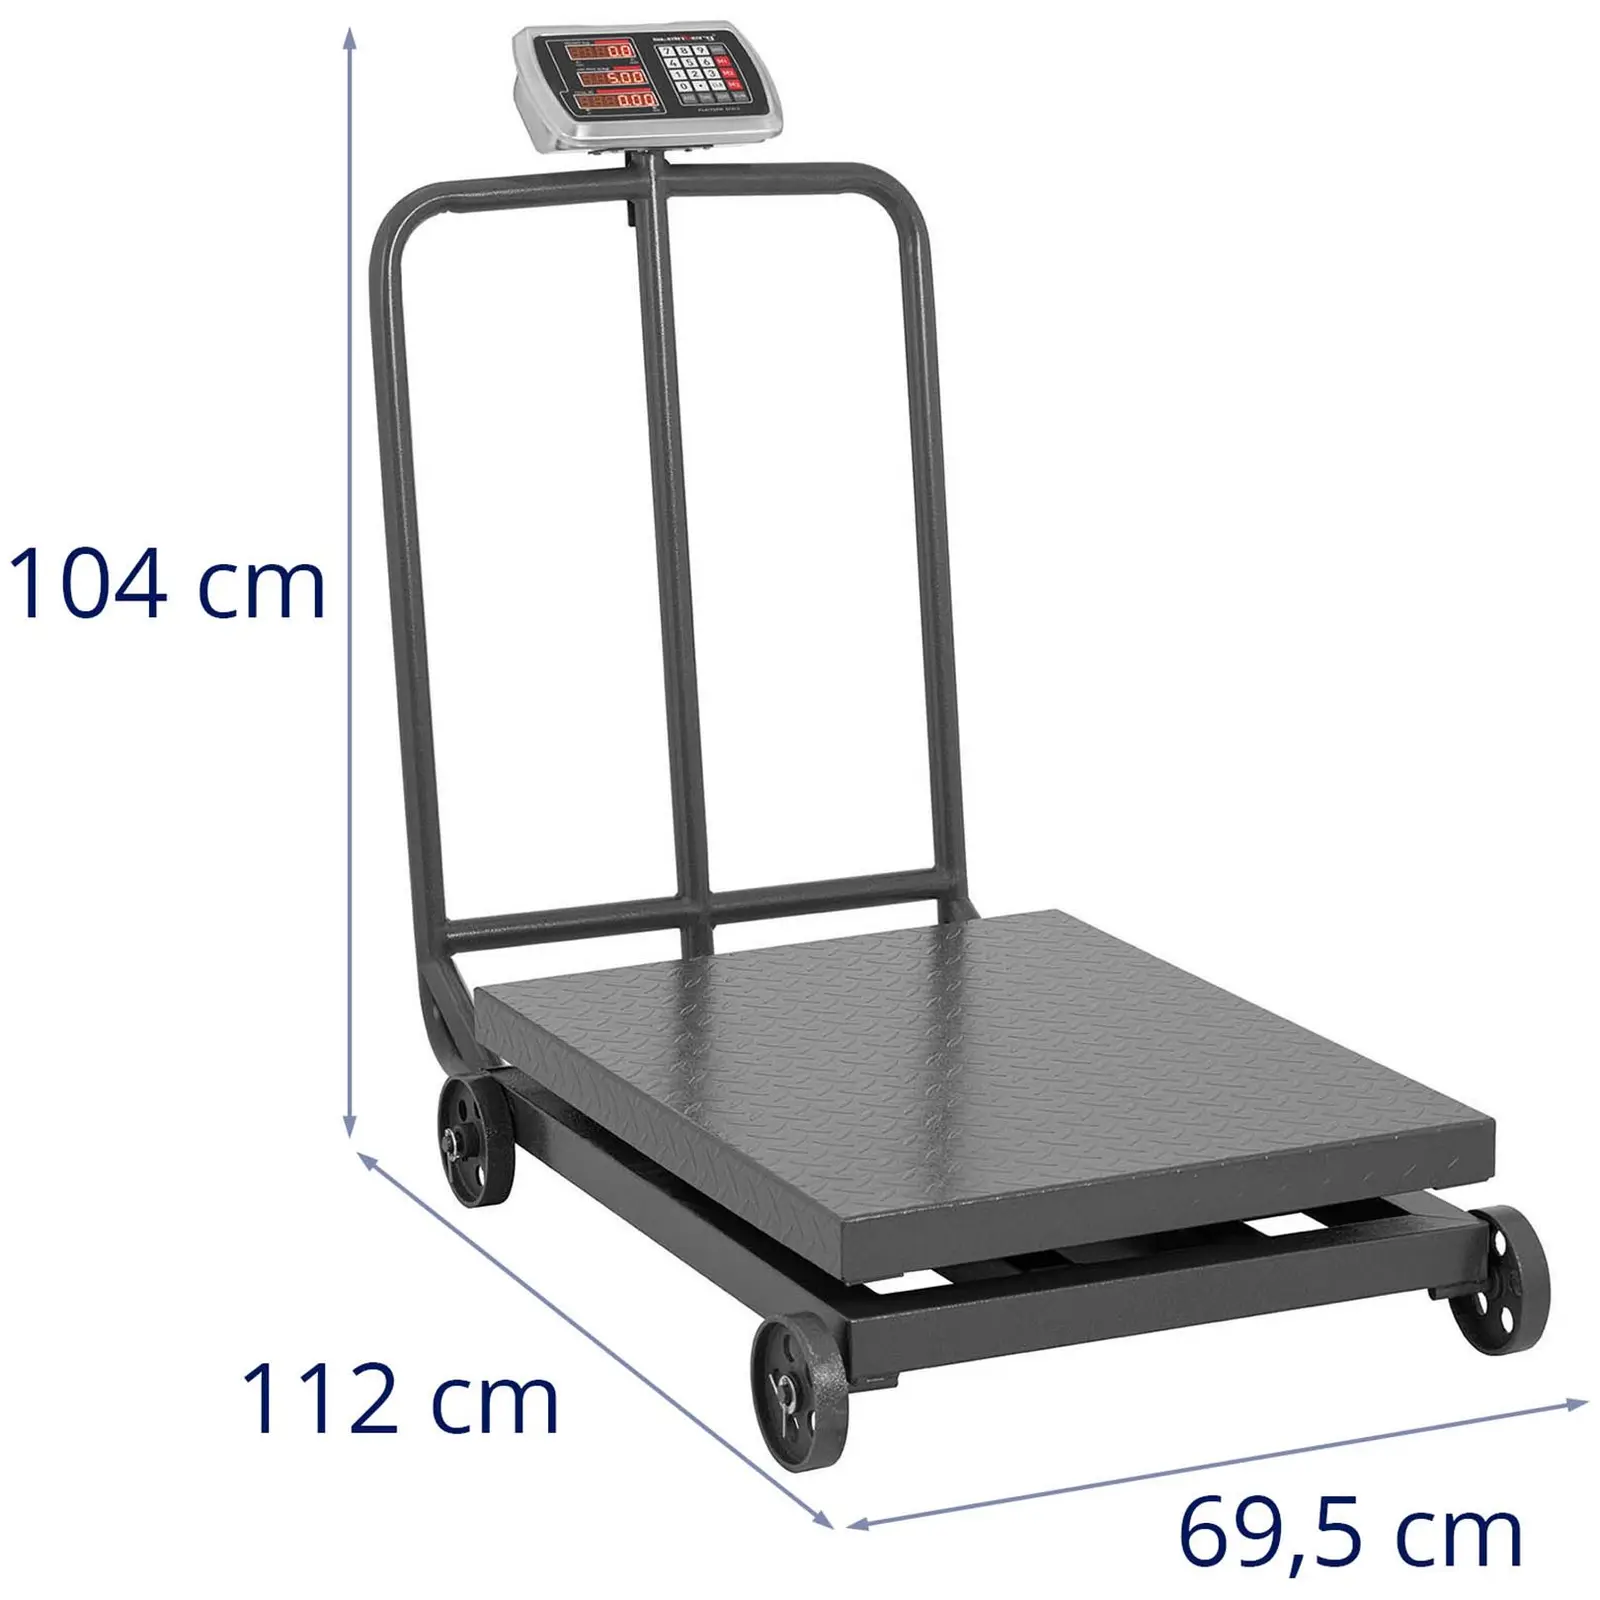 Balance plateforme mobile - 1 000 kg / 200 g - Afficheur LED